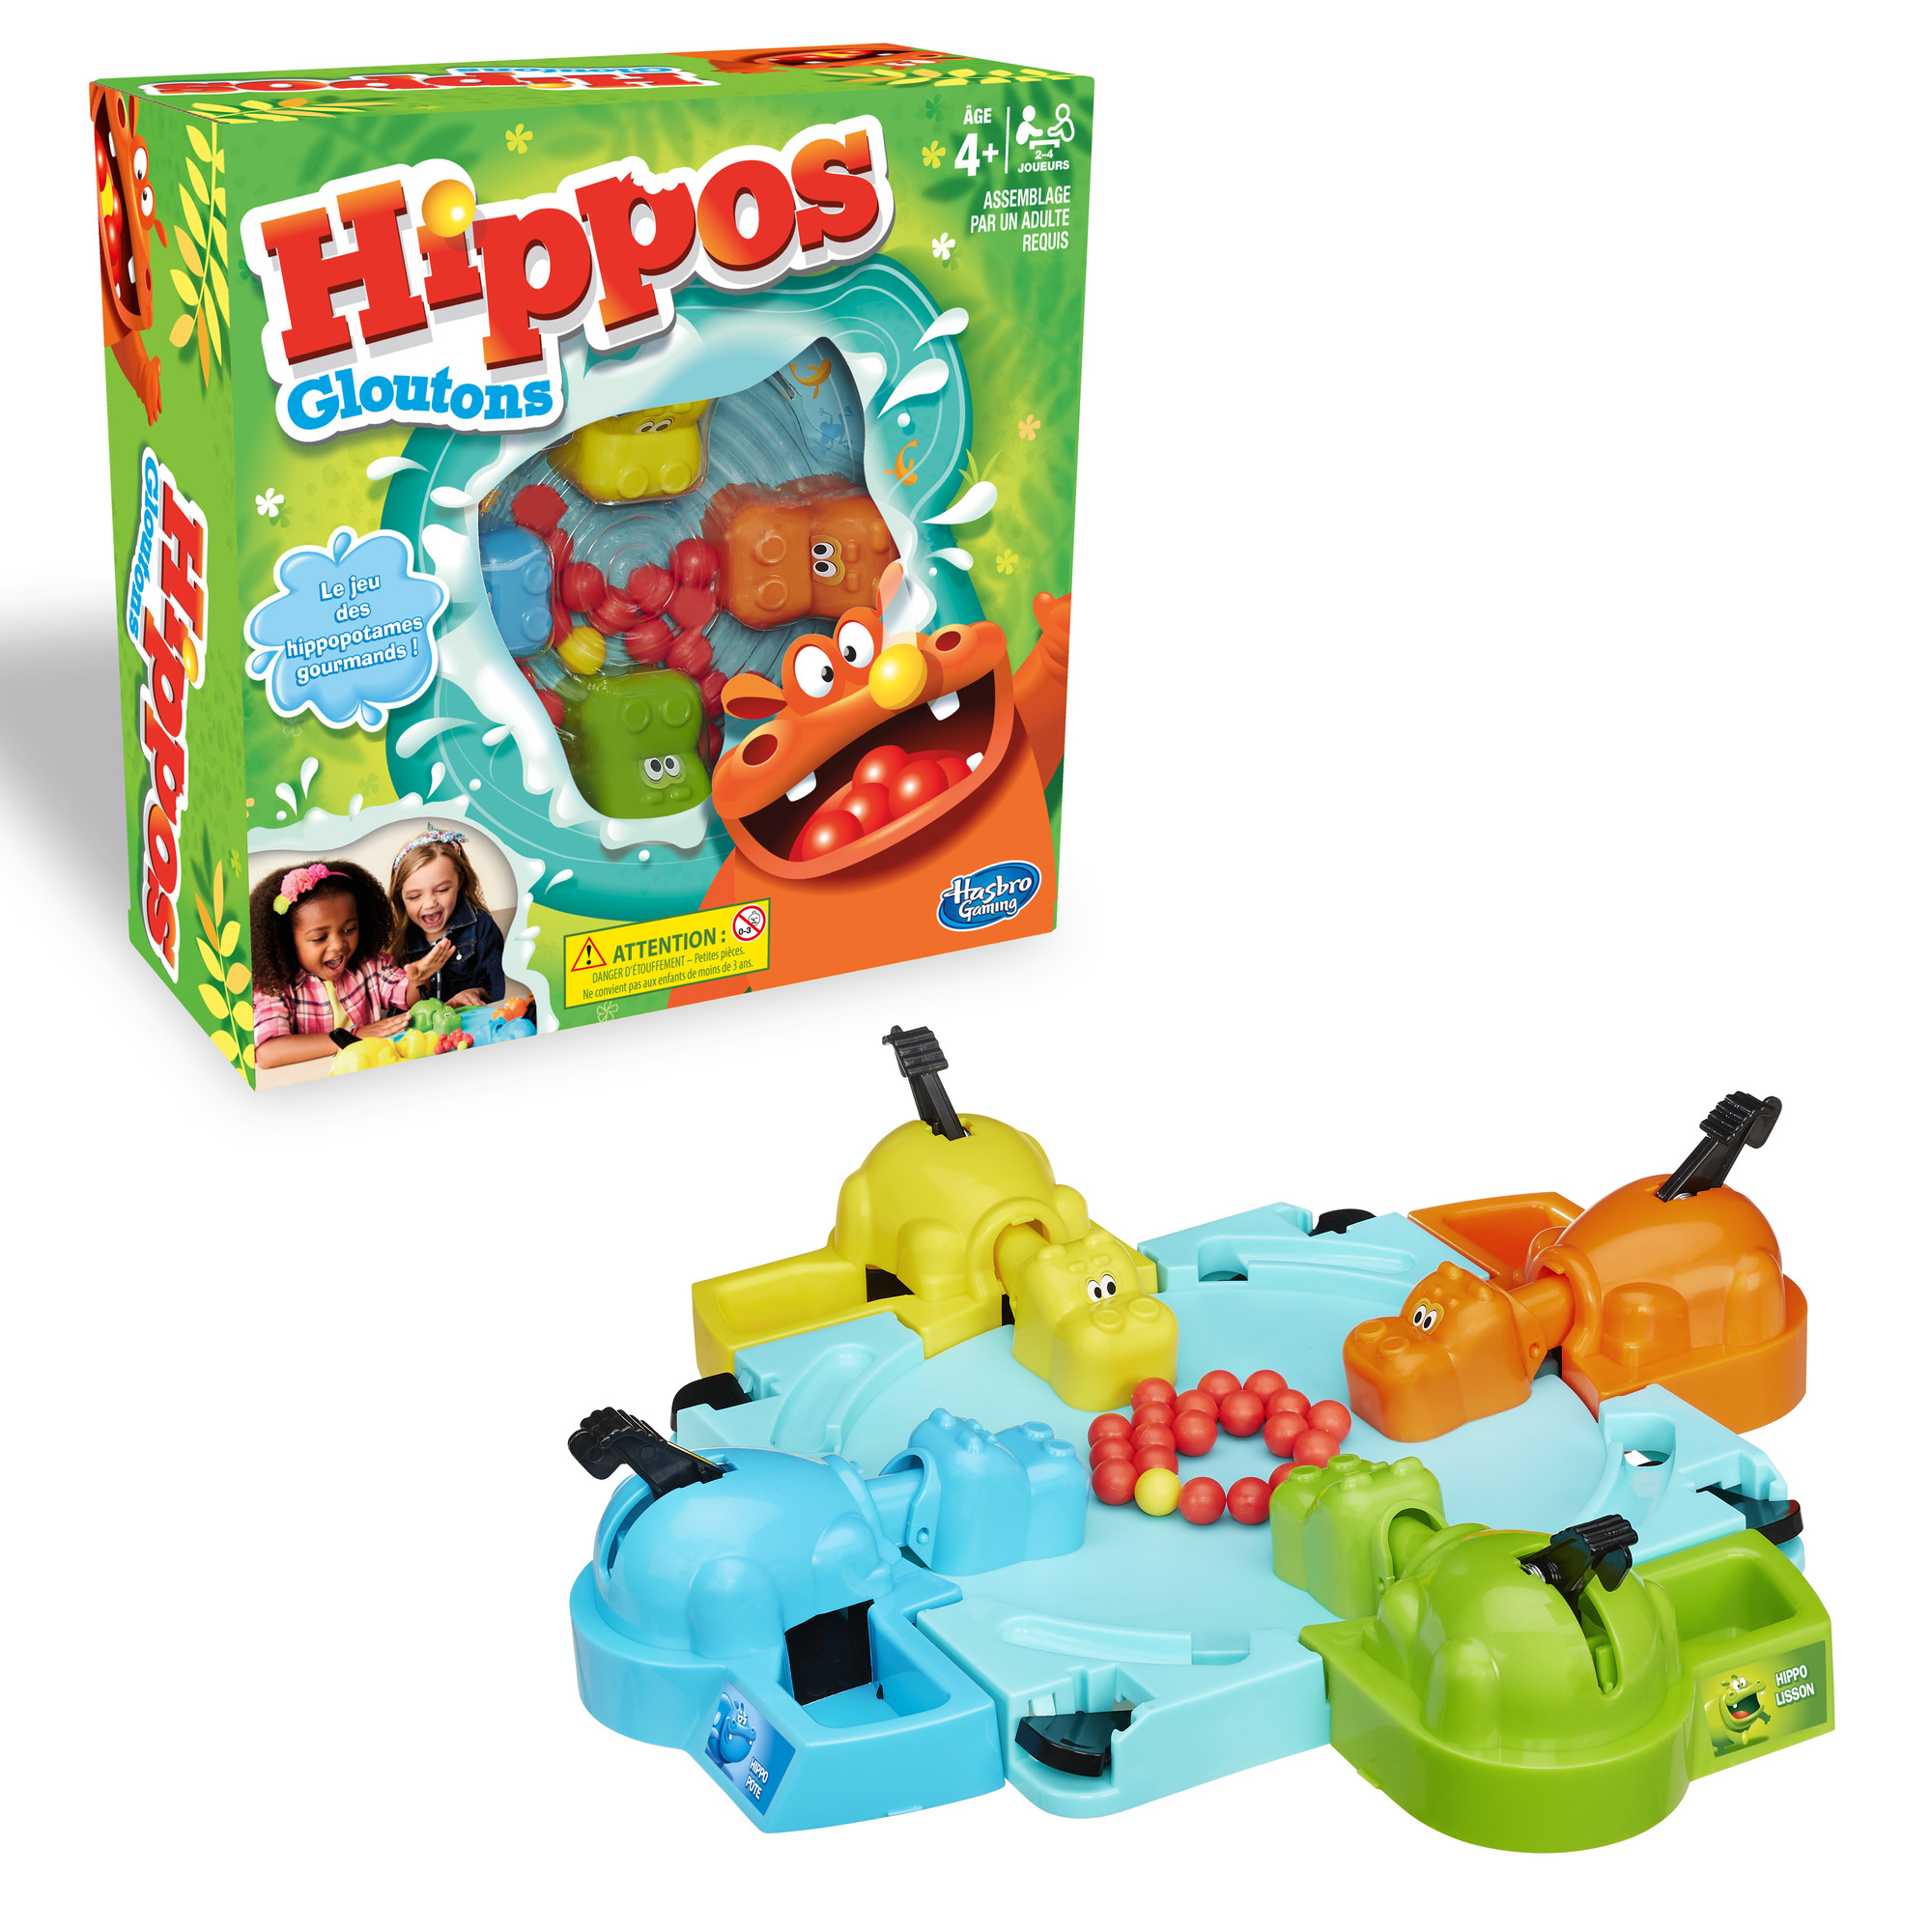 Promo Hippo Rigolo chez Carrefour